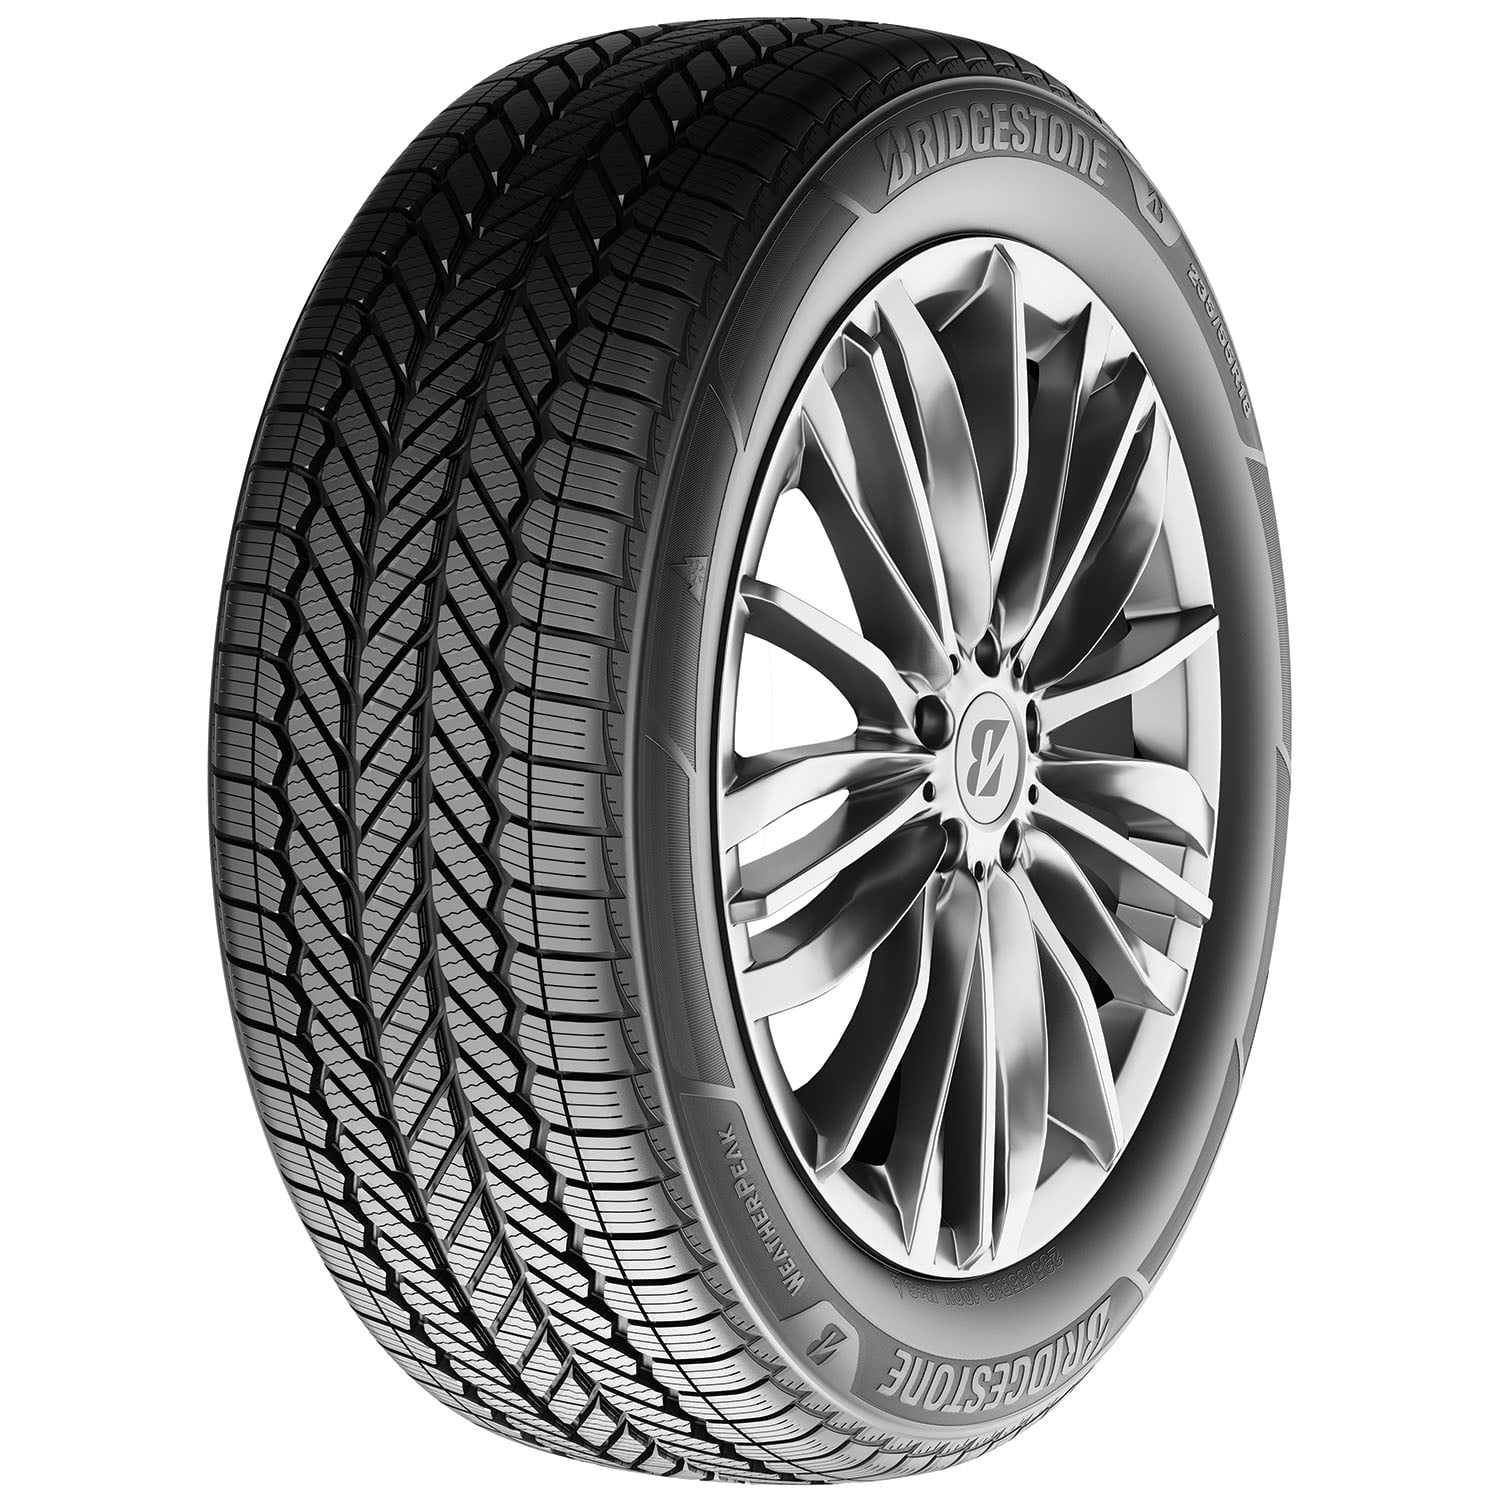 Shop zu supergünstigen Preisen Bridgestone Weatherpeak 225/55R17 97V Highway Passenger Car Terrain Tires